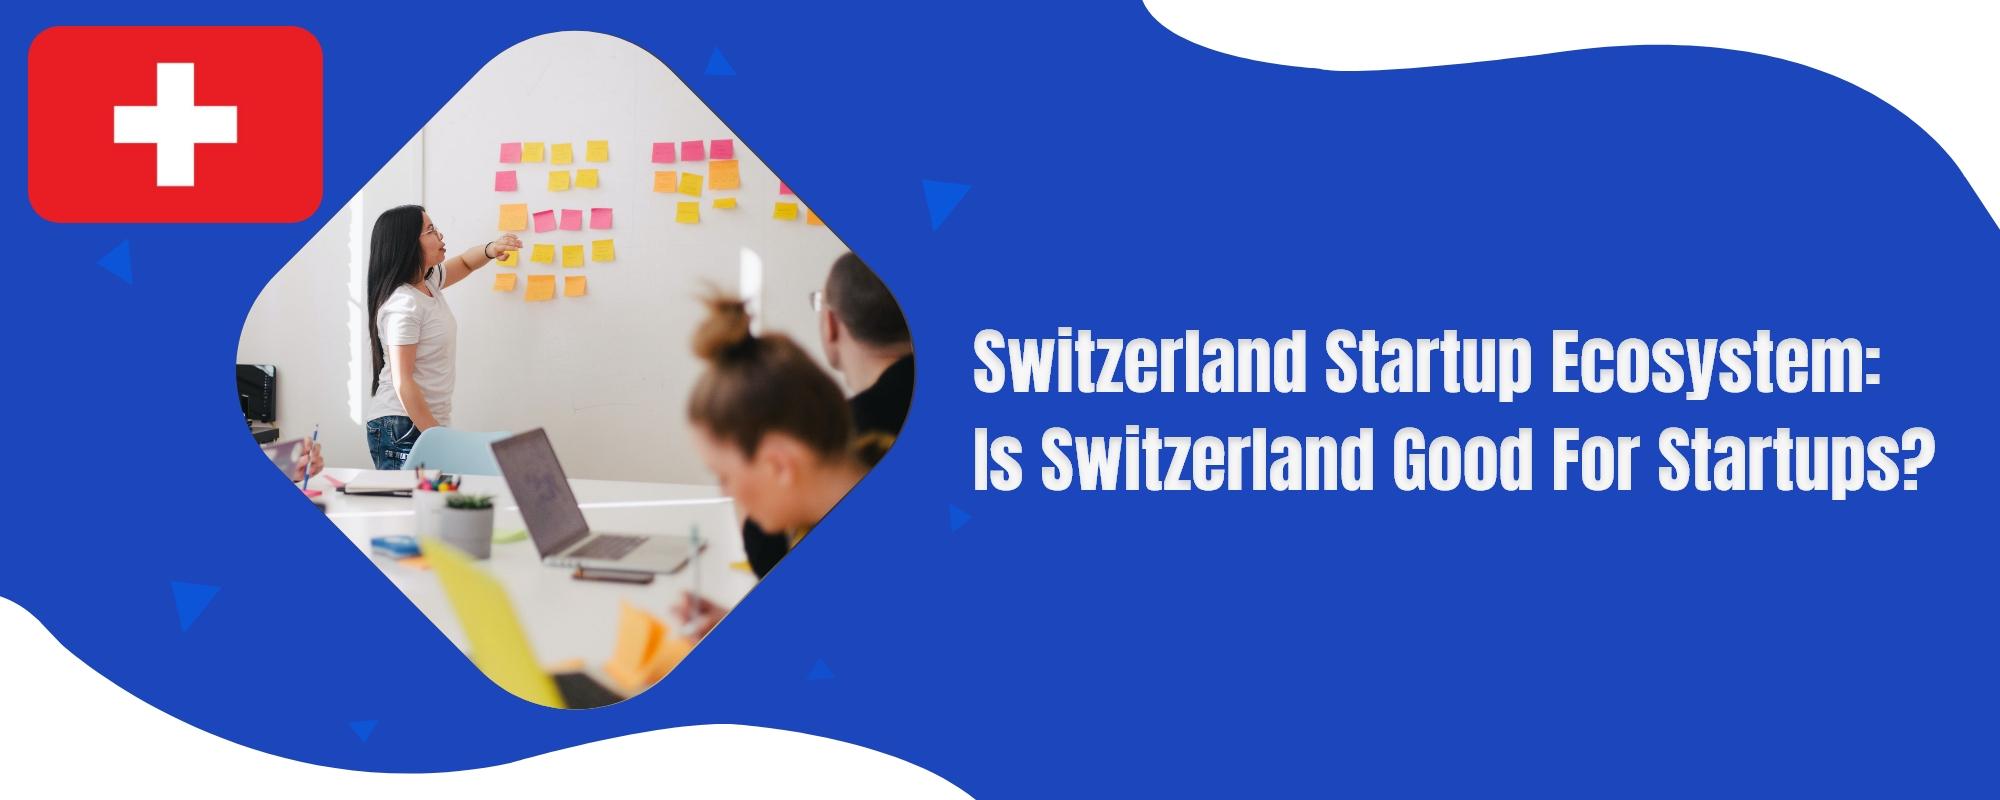 Switzerland startup ecosystem